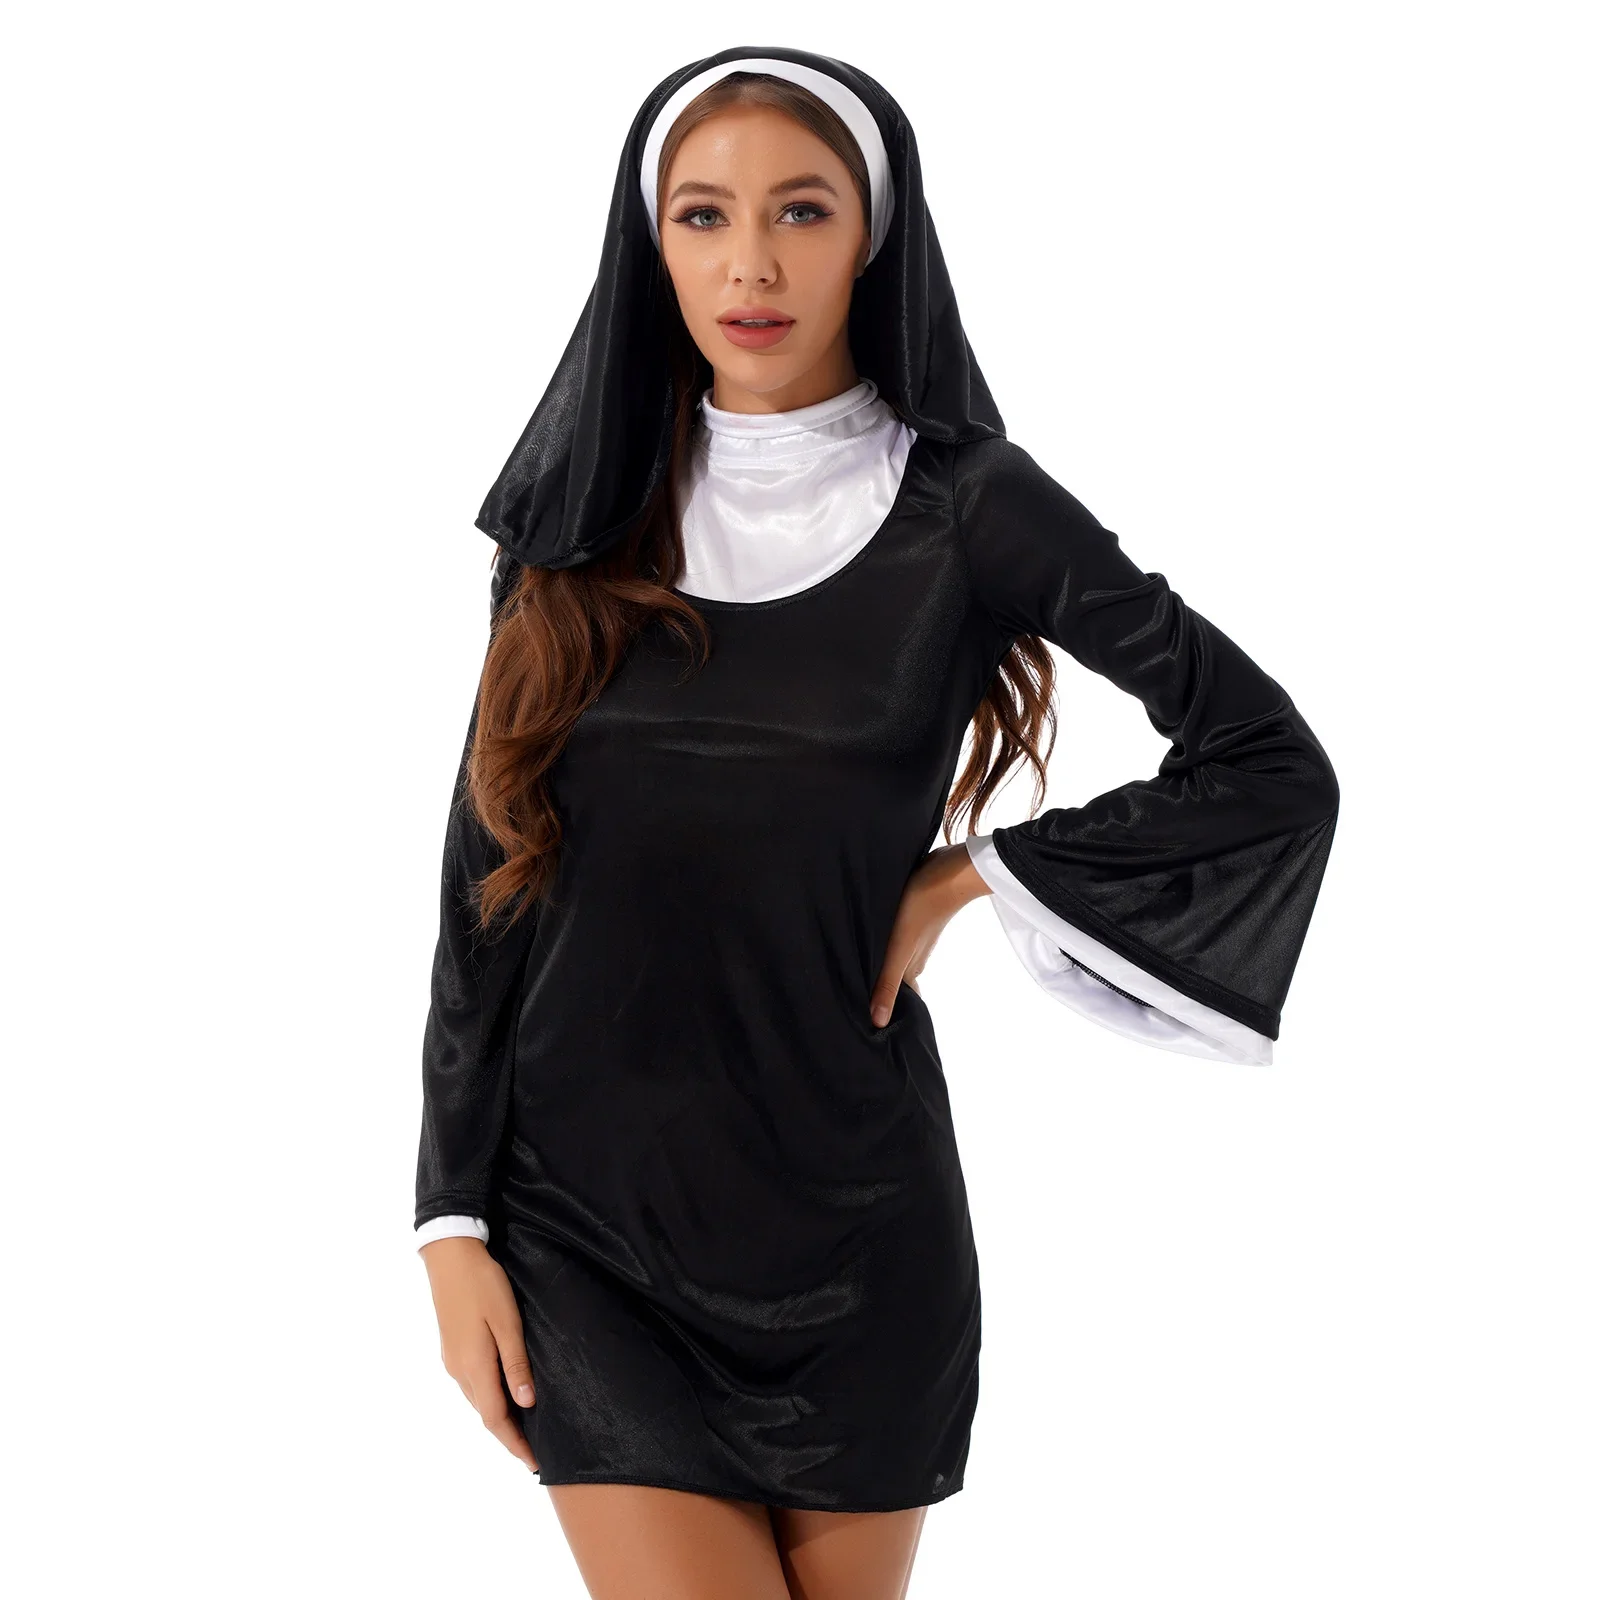 

Женское сексуальное нижнее белье, костюм монахини для ролевых игр, костюмы для Хэллоуина, сценический наряд, платье с высоким воротником и Расклешенным рукавом и головной платок